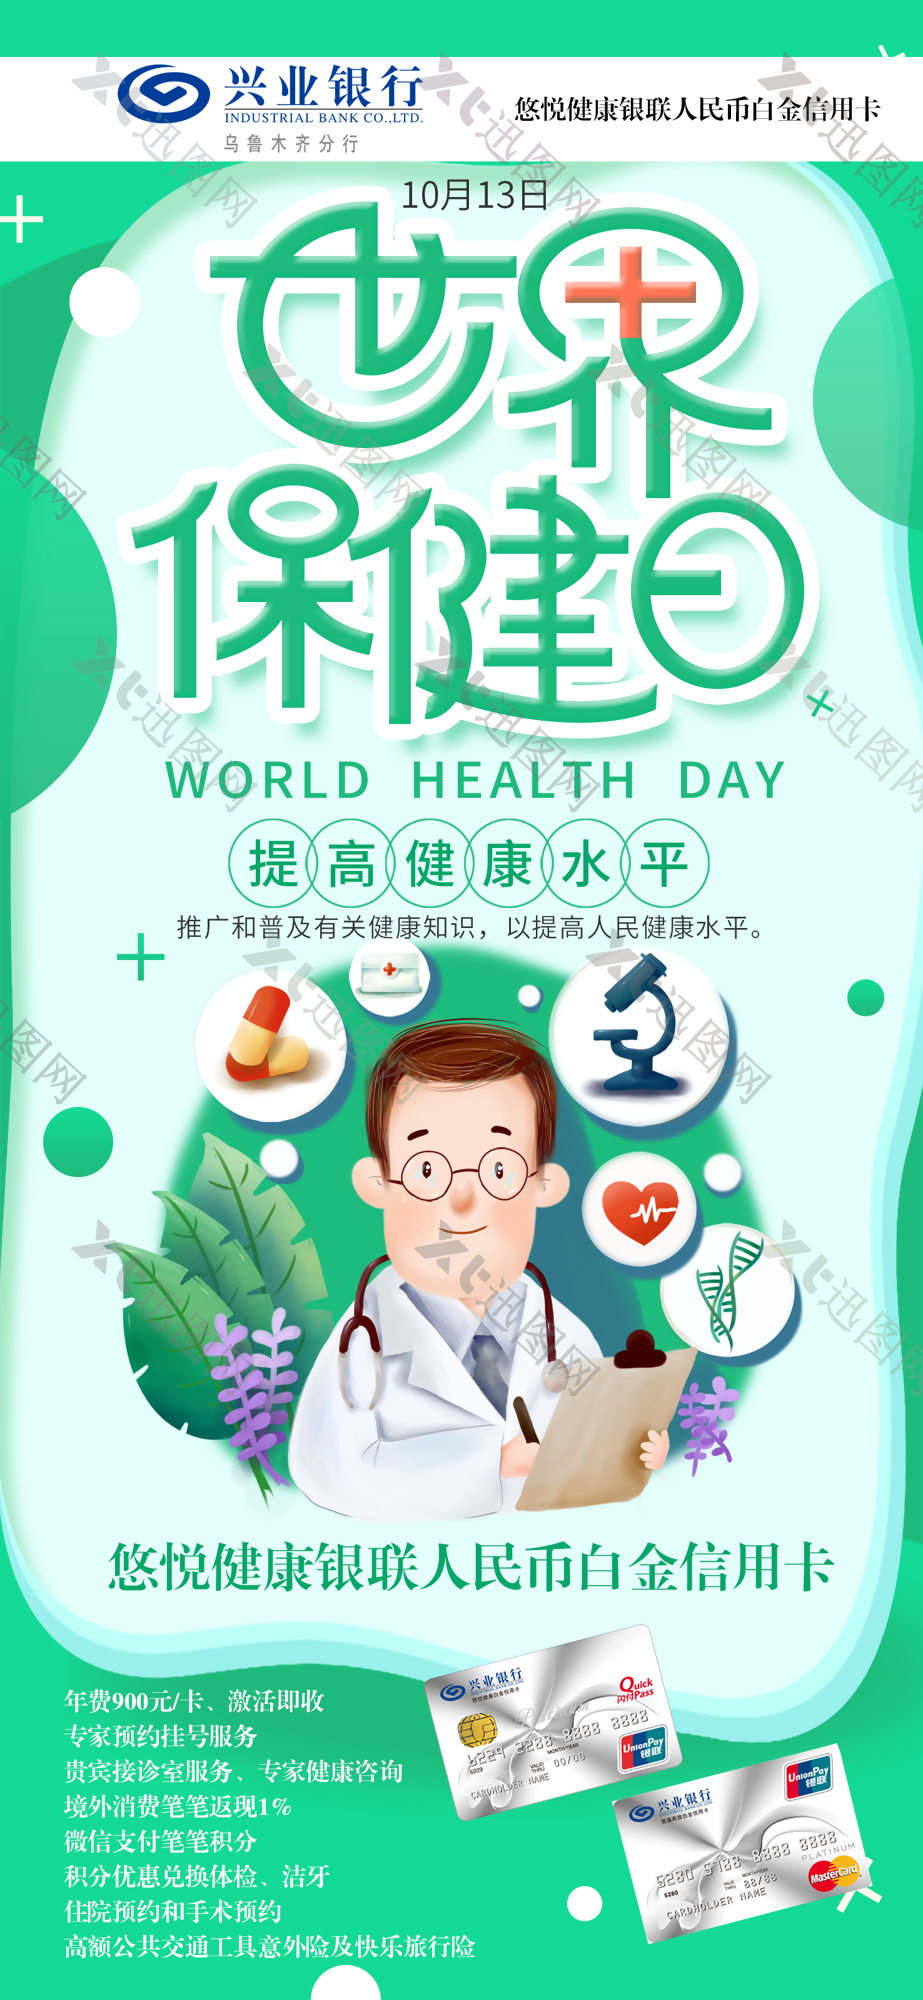 世界保健日卫生健康安全海报